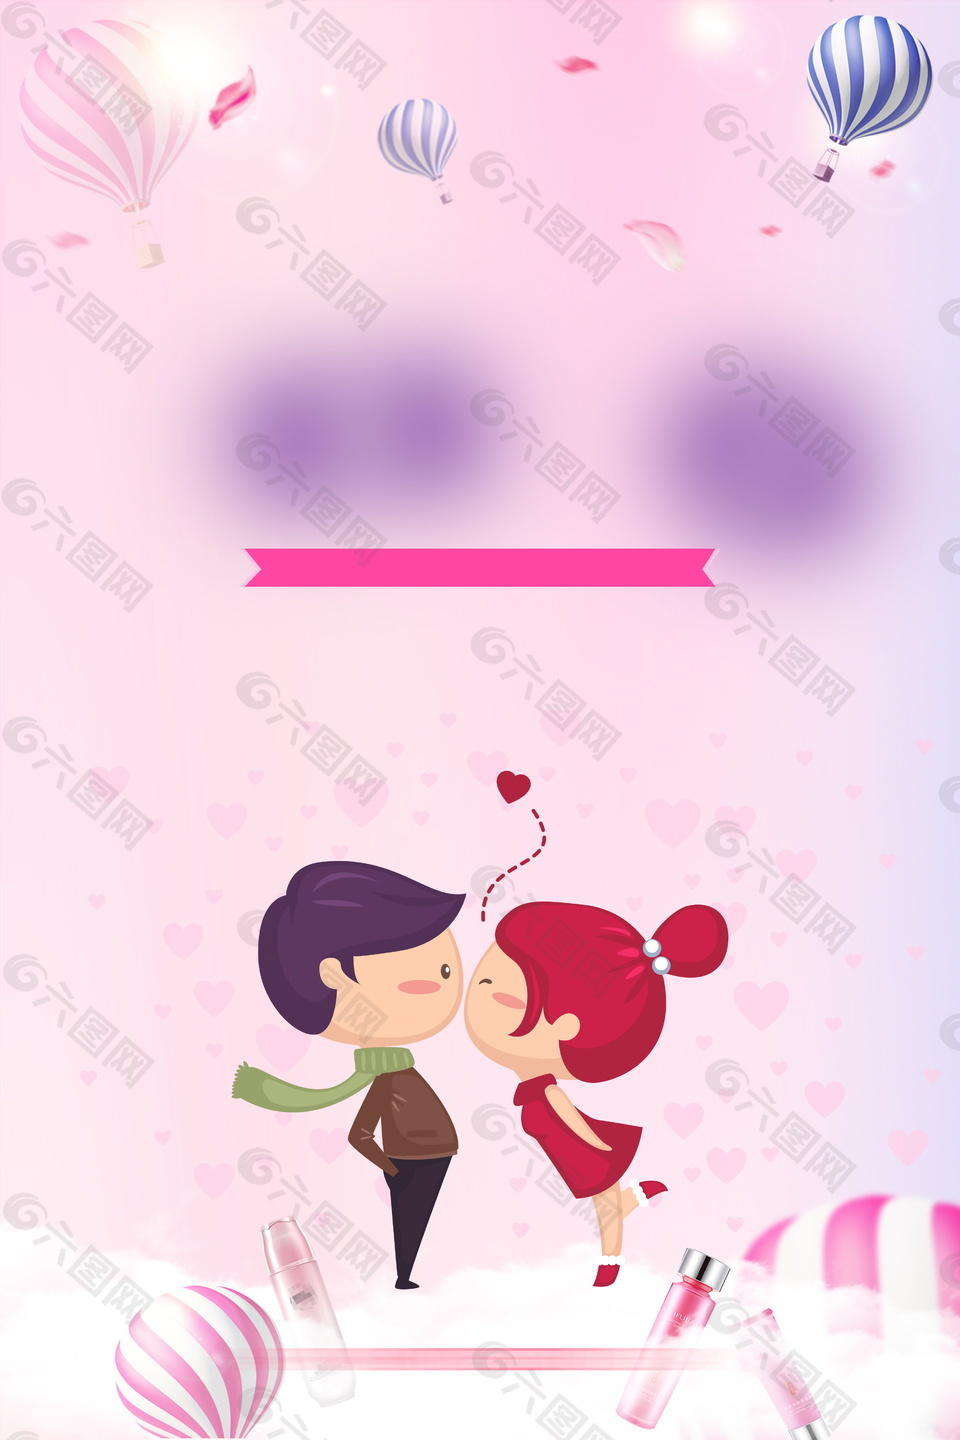 可爱卡通情侣亲吻广告背景